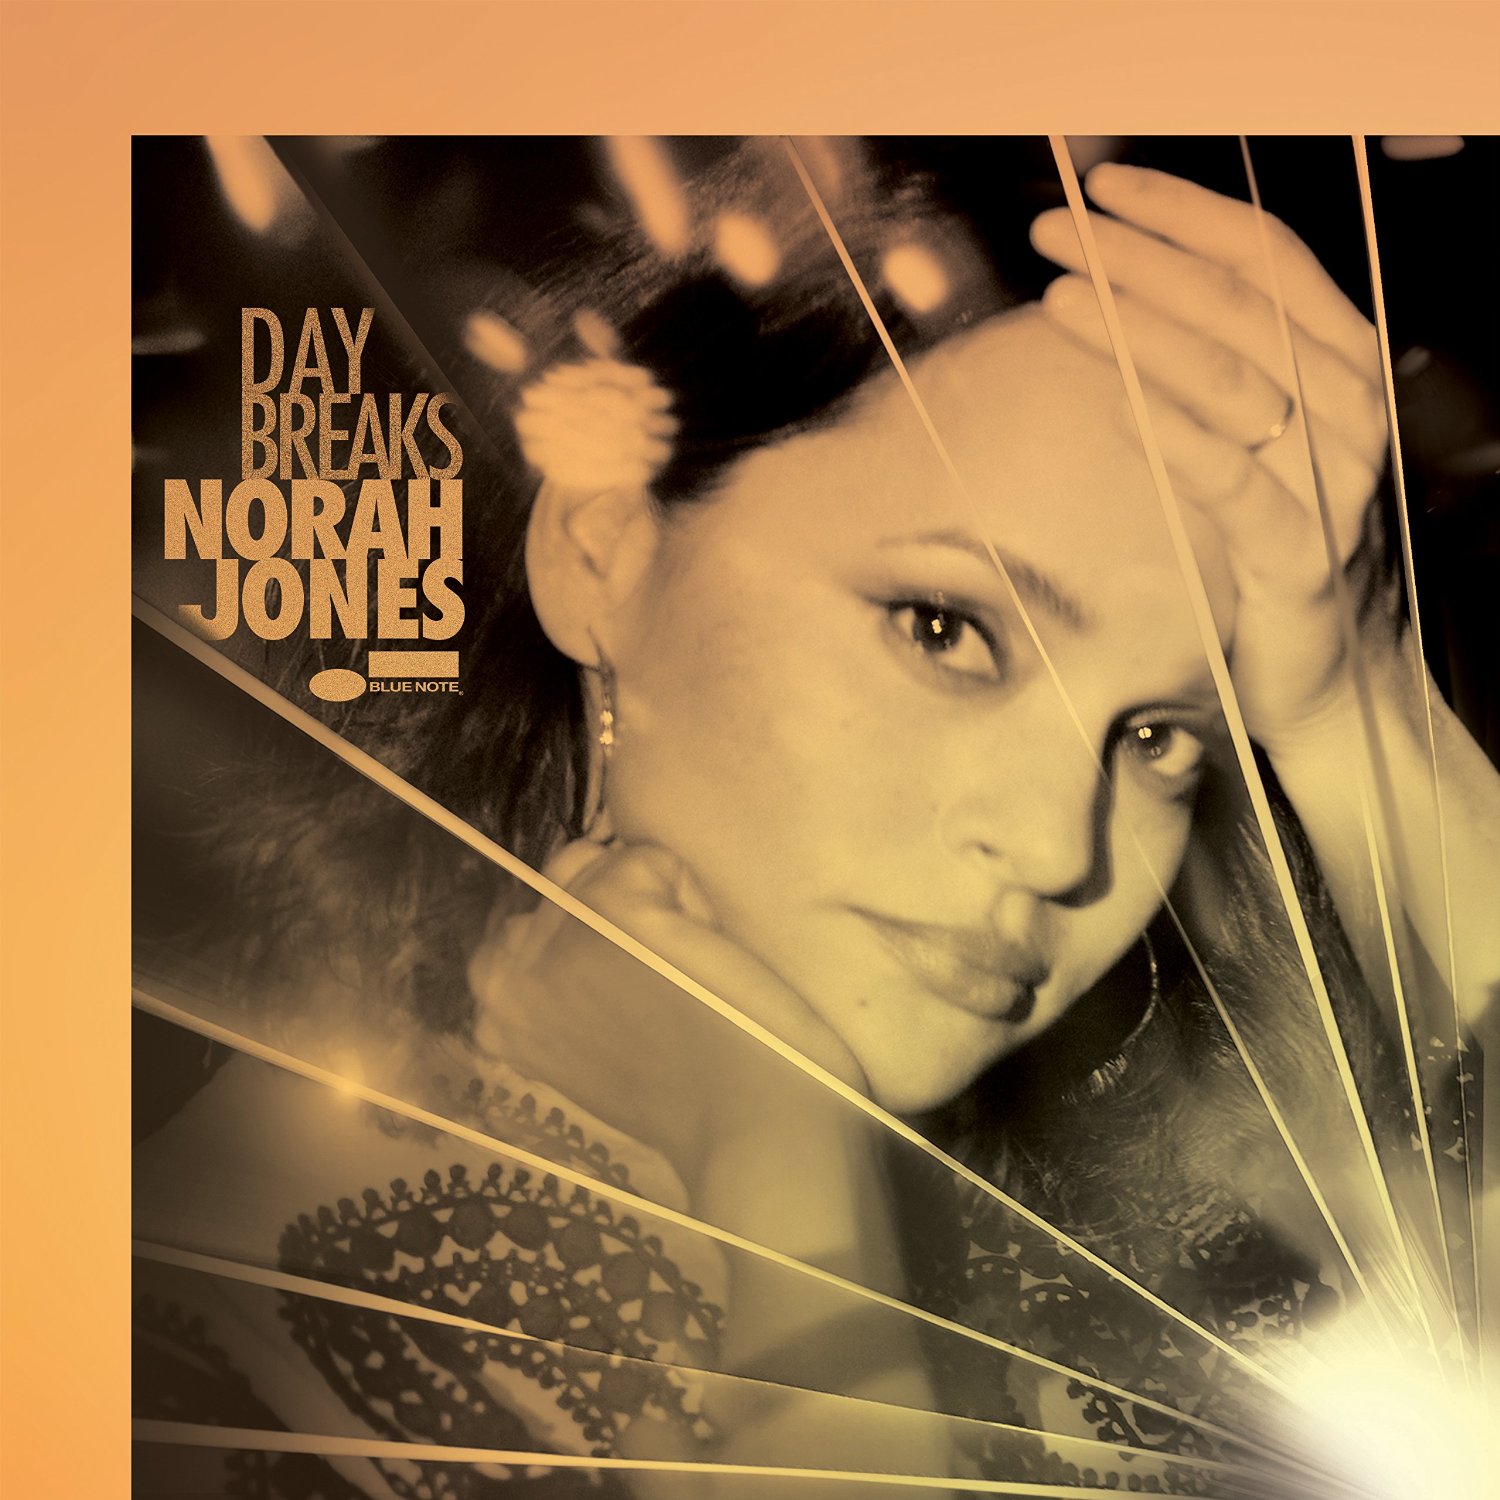 Norah Jones - Day Breaks (2016) [HDTracks FLAC 24bit/96kHz]